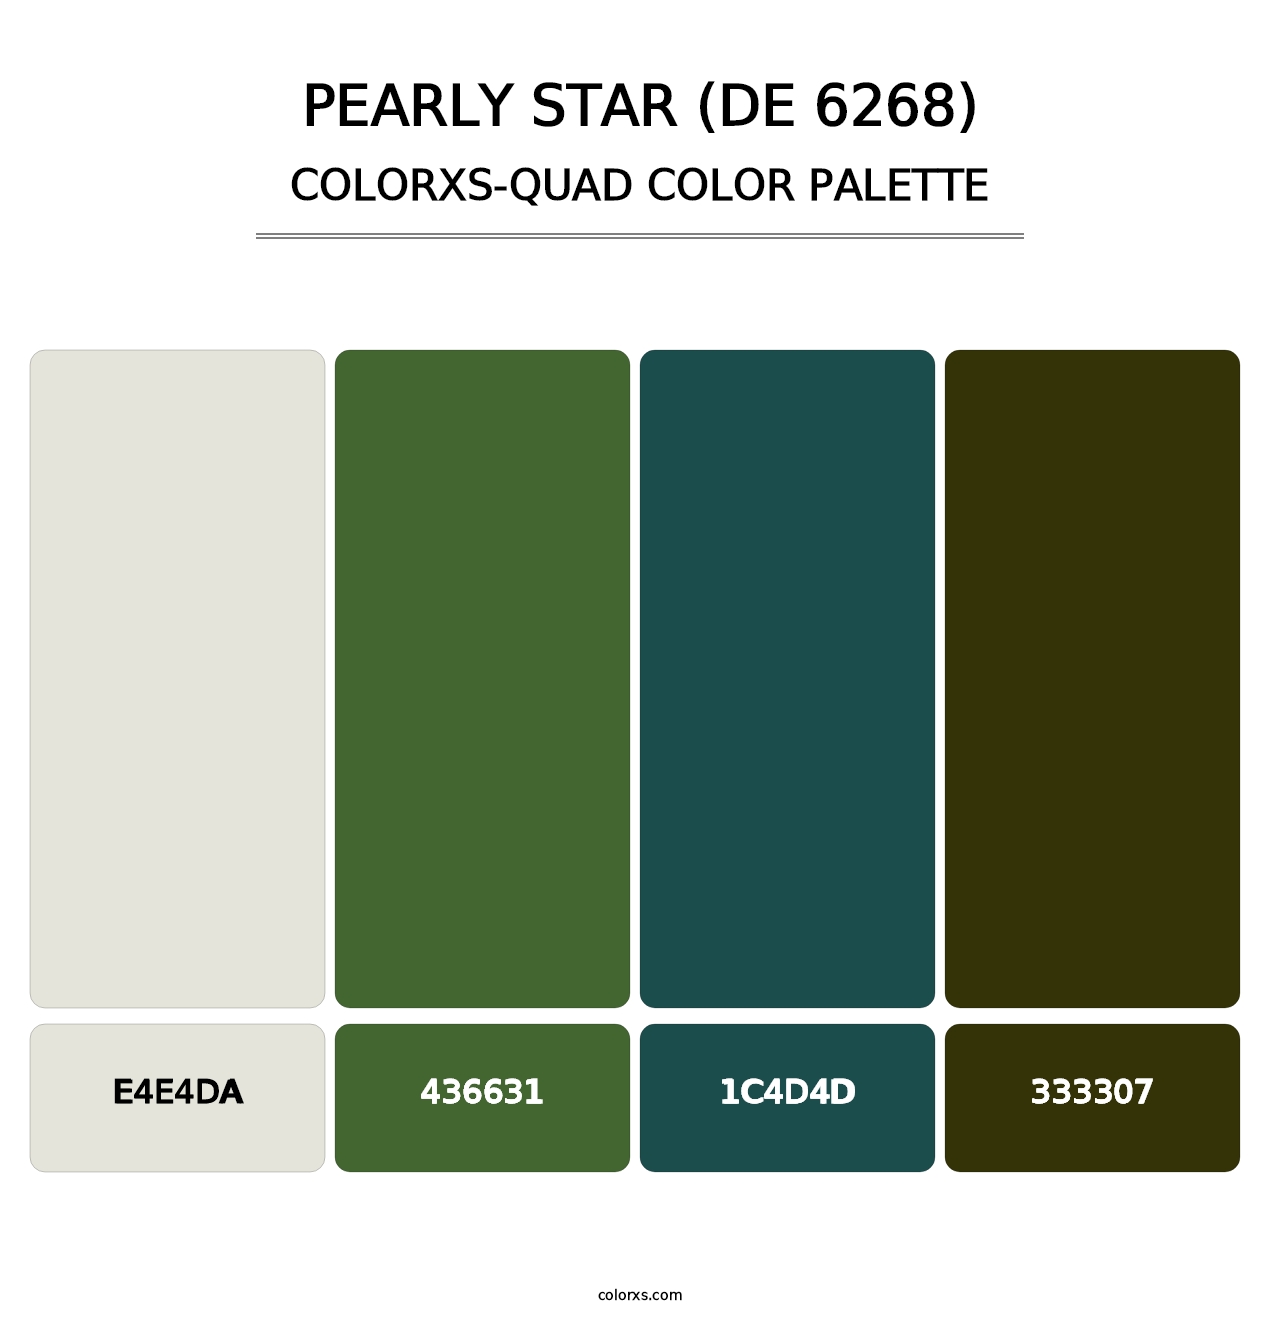 Pearly Star (DE 6268) - Colorxs Quad Palette